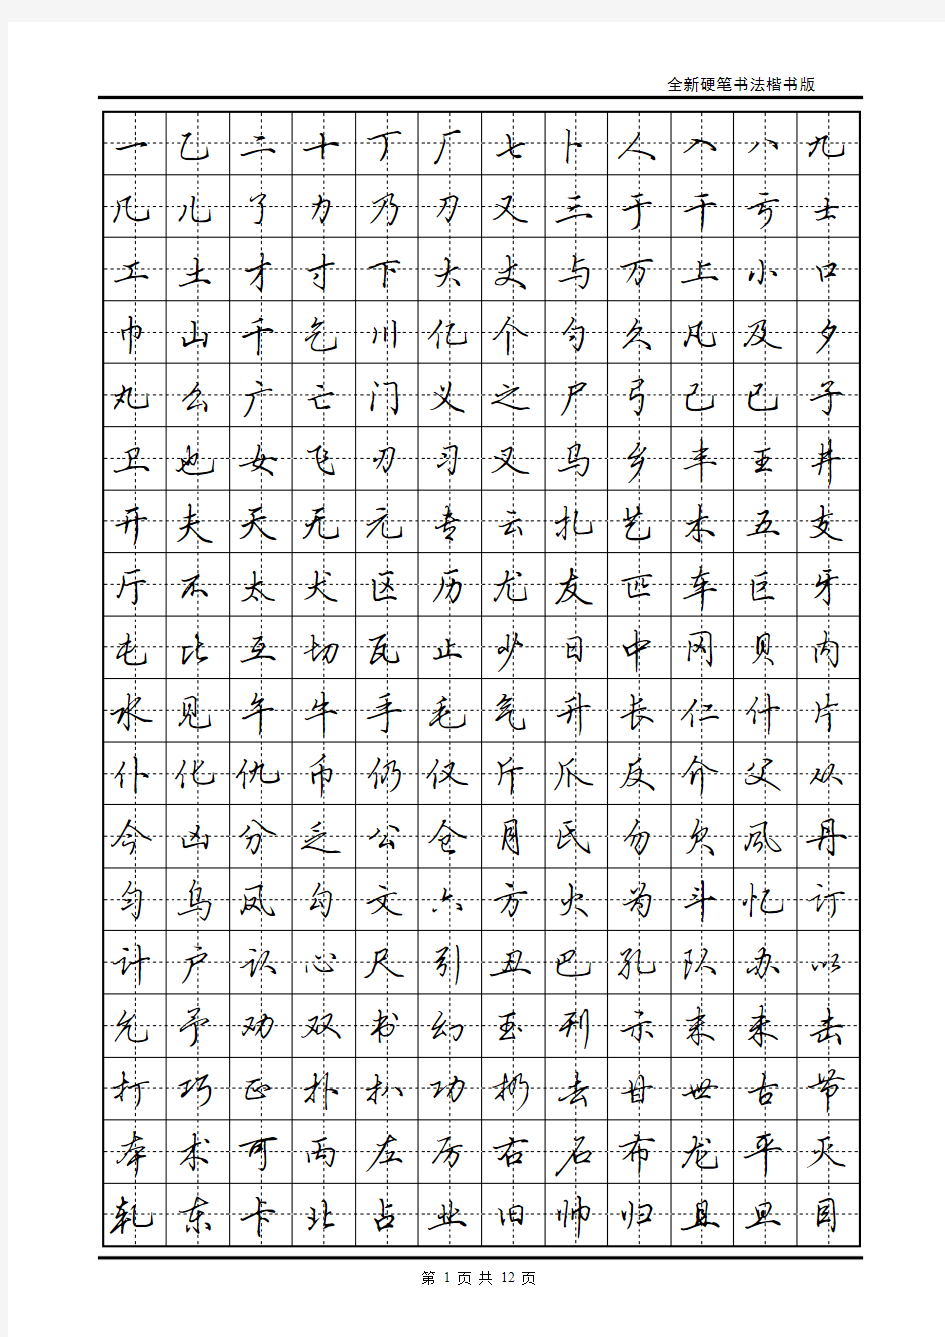 现代汉语常用字3500字帖(田英章)讲解学习